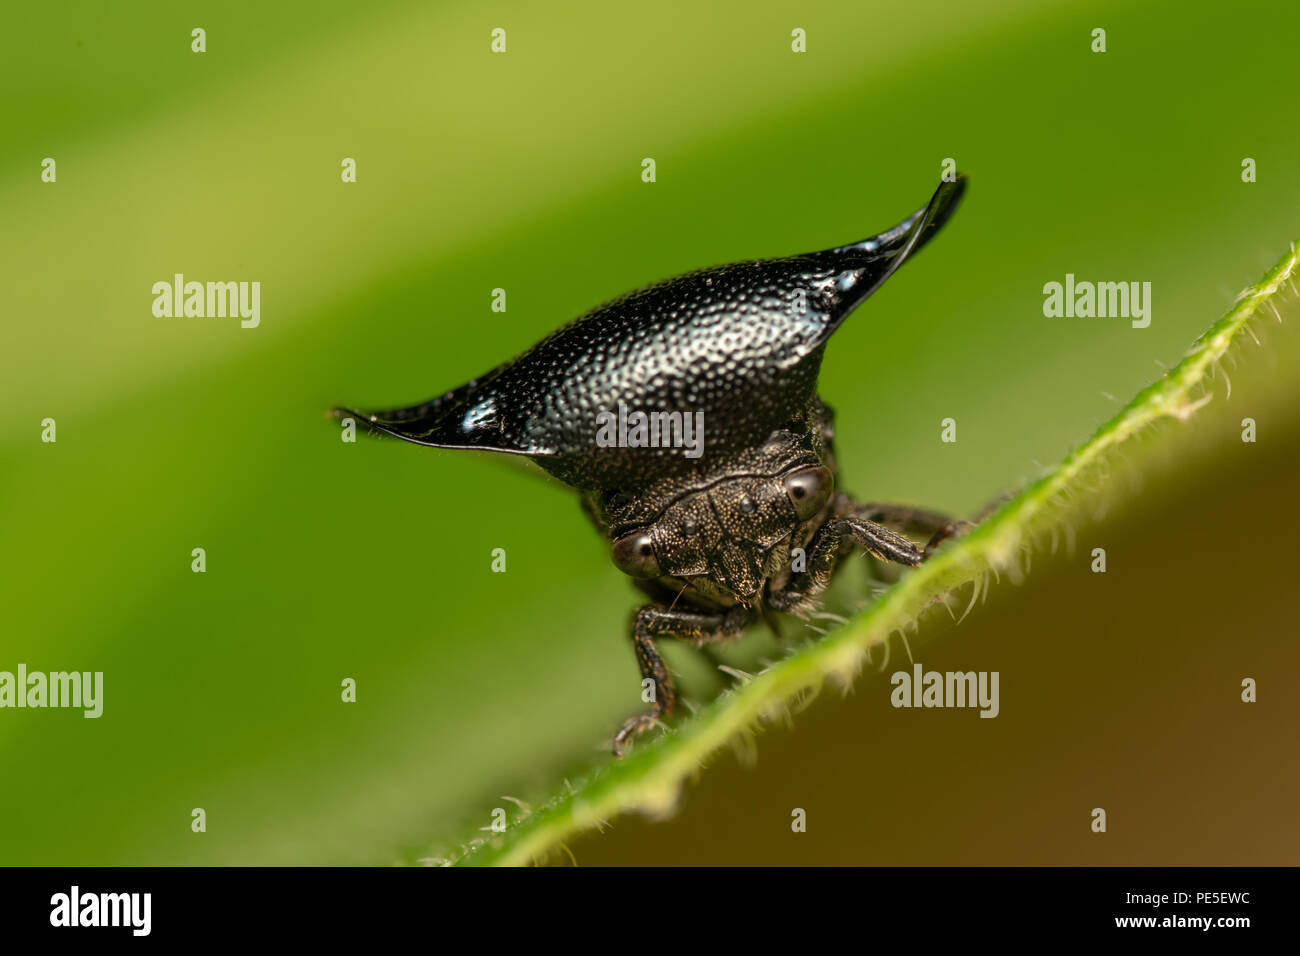 Centrotypus sp. Treehoppers alo conosciuta come Thorn bugs sono membri della famiglia Membracidae, un gruppo di insetti legate a le cicale e il leafhopp Foto Stock